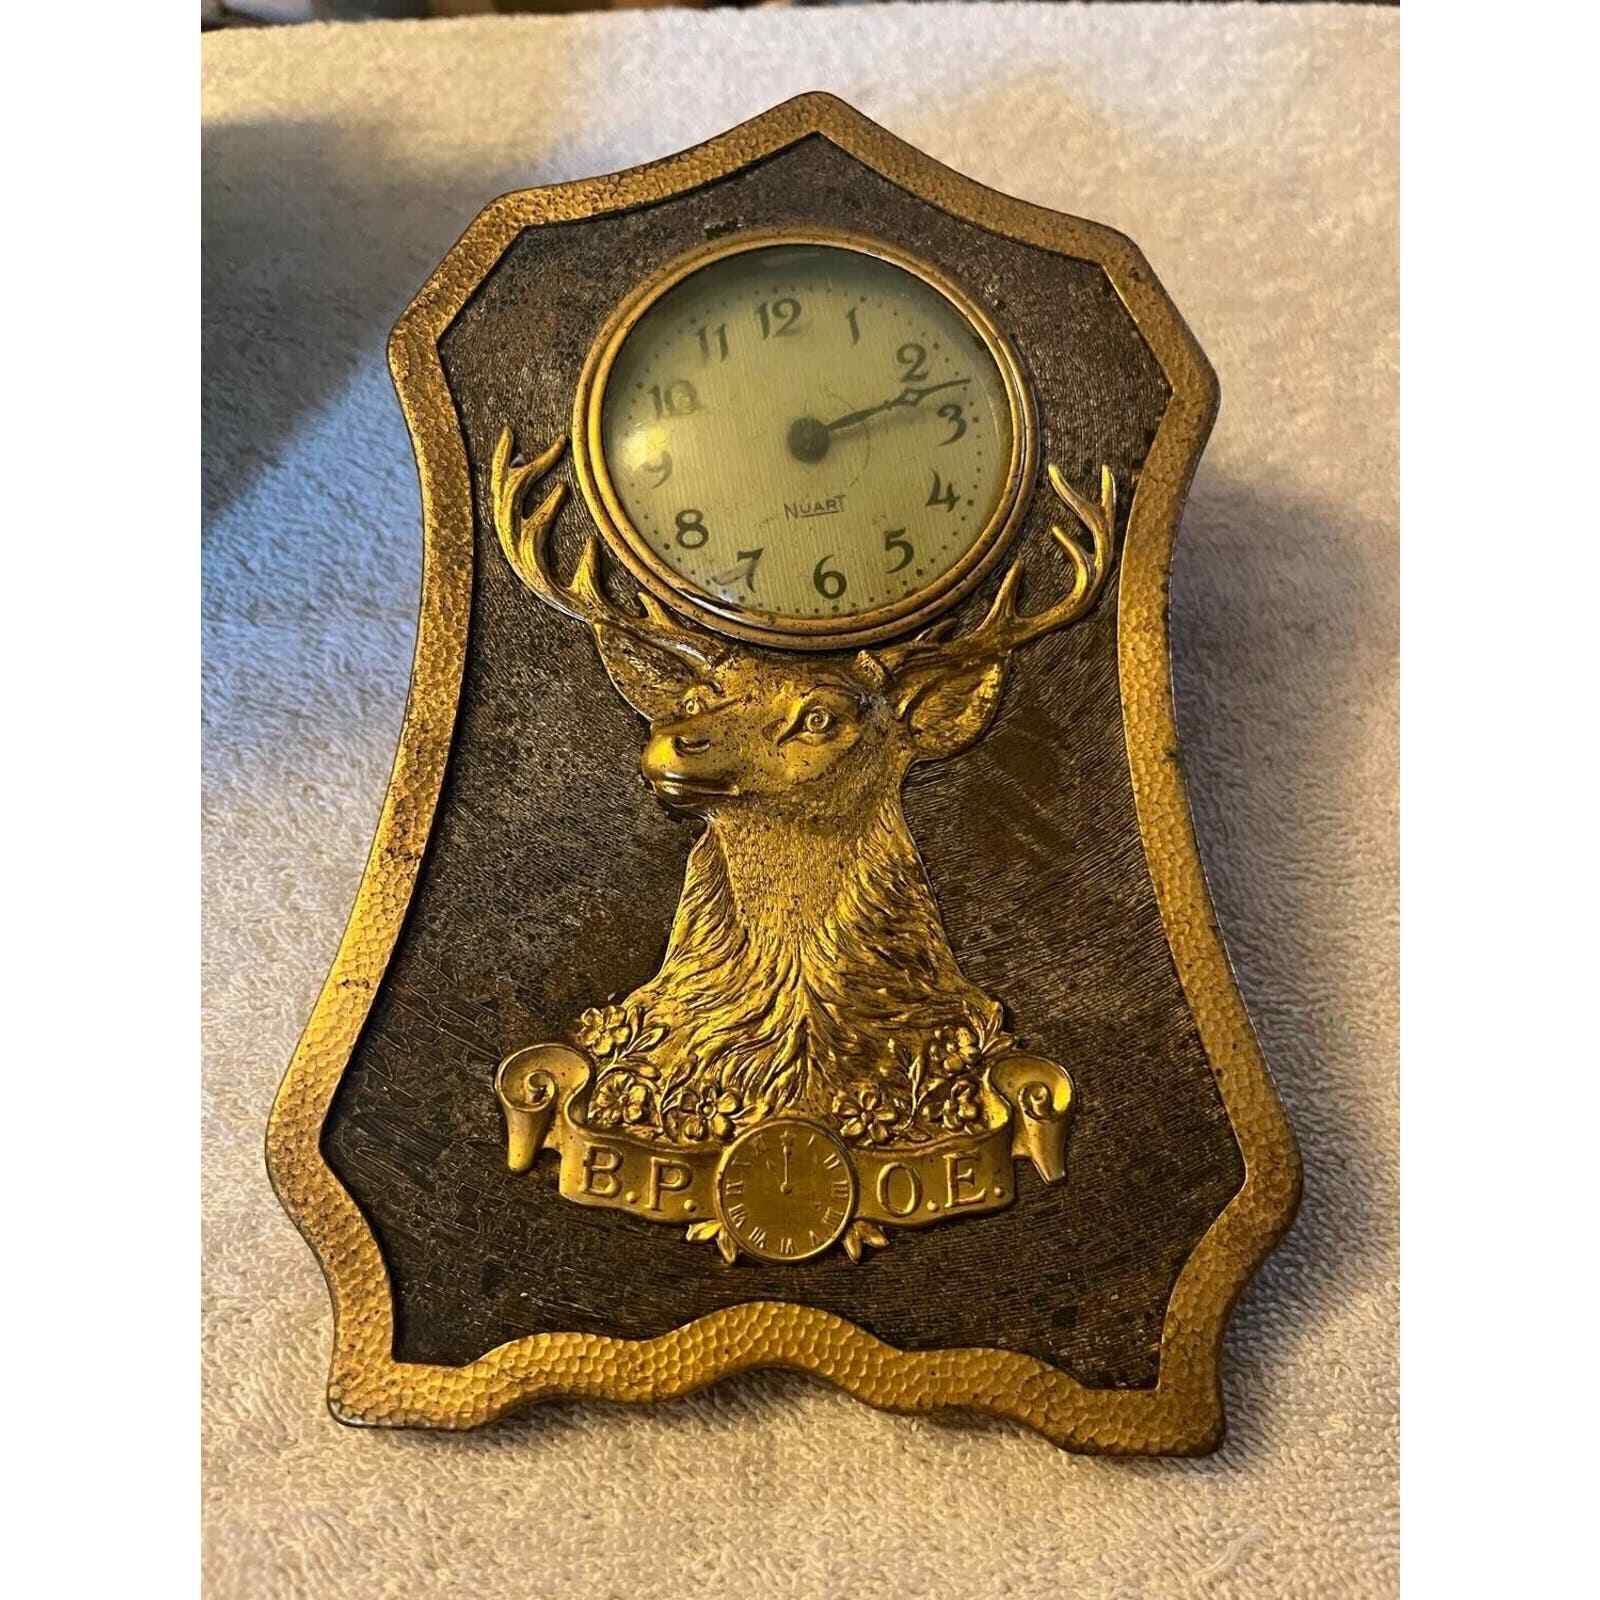 B.P.O.E. Elks Antique Clock